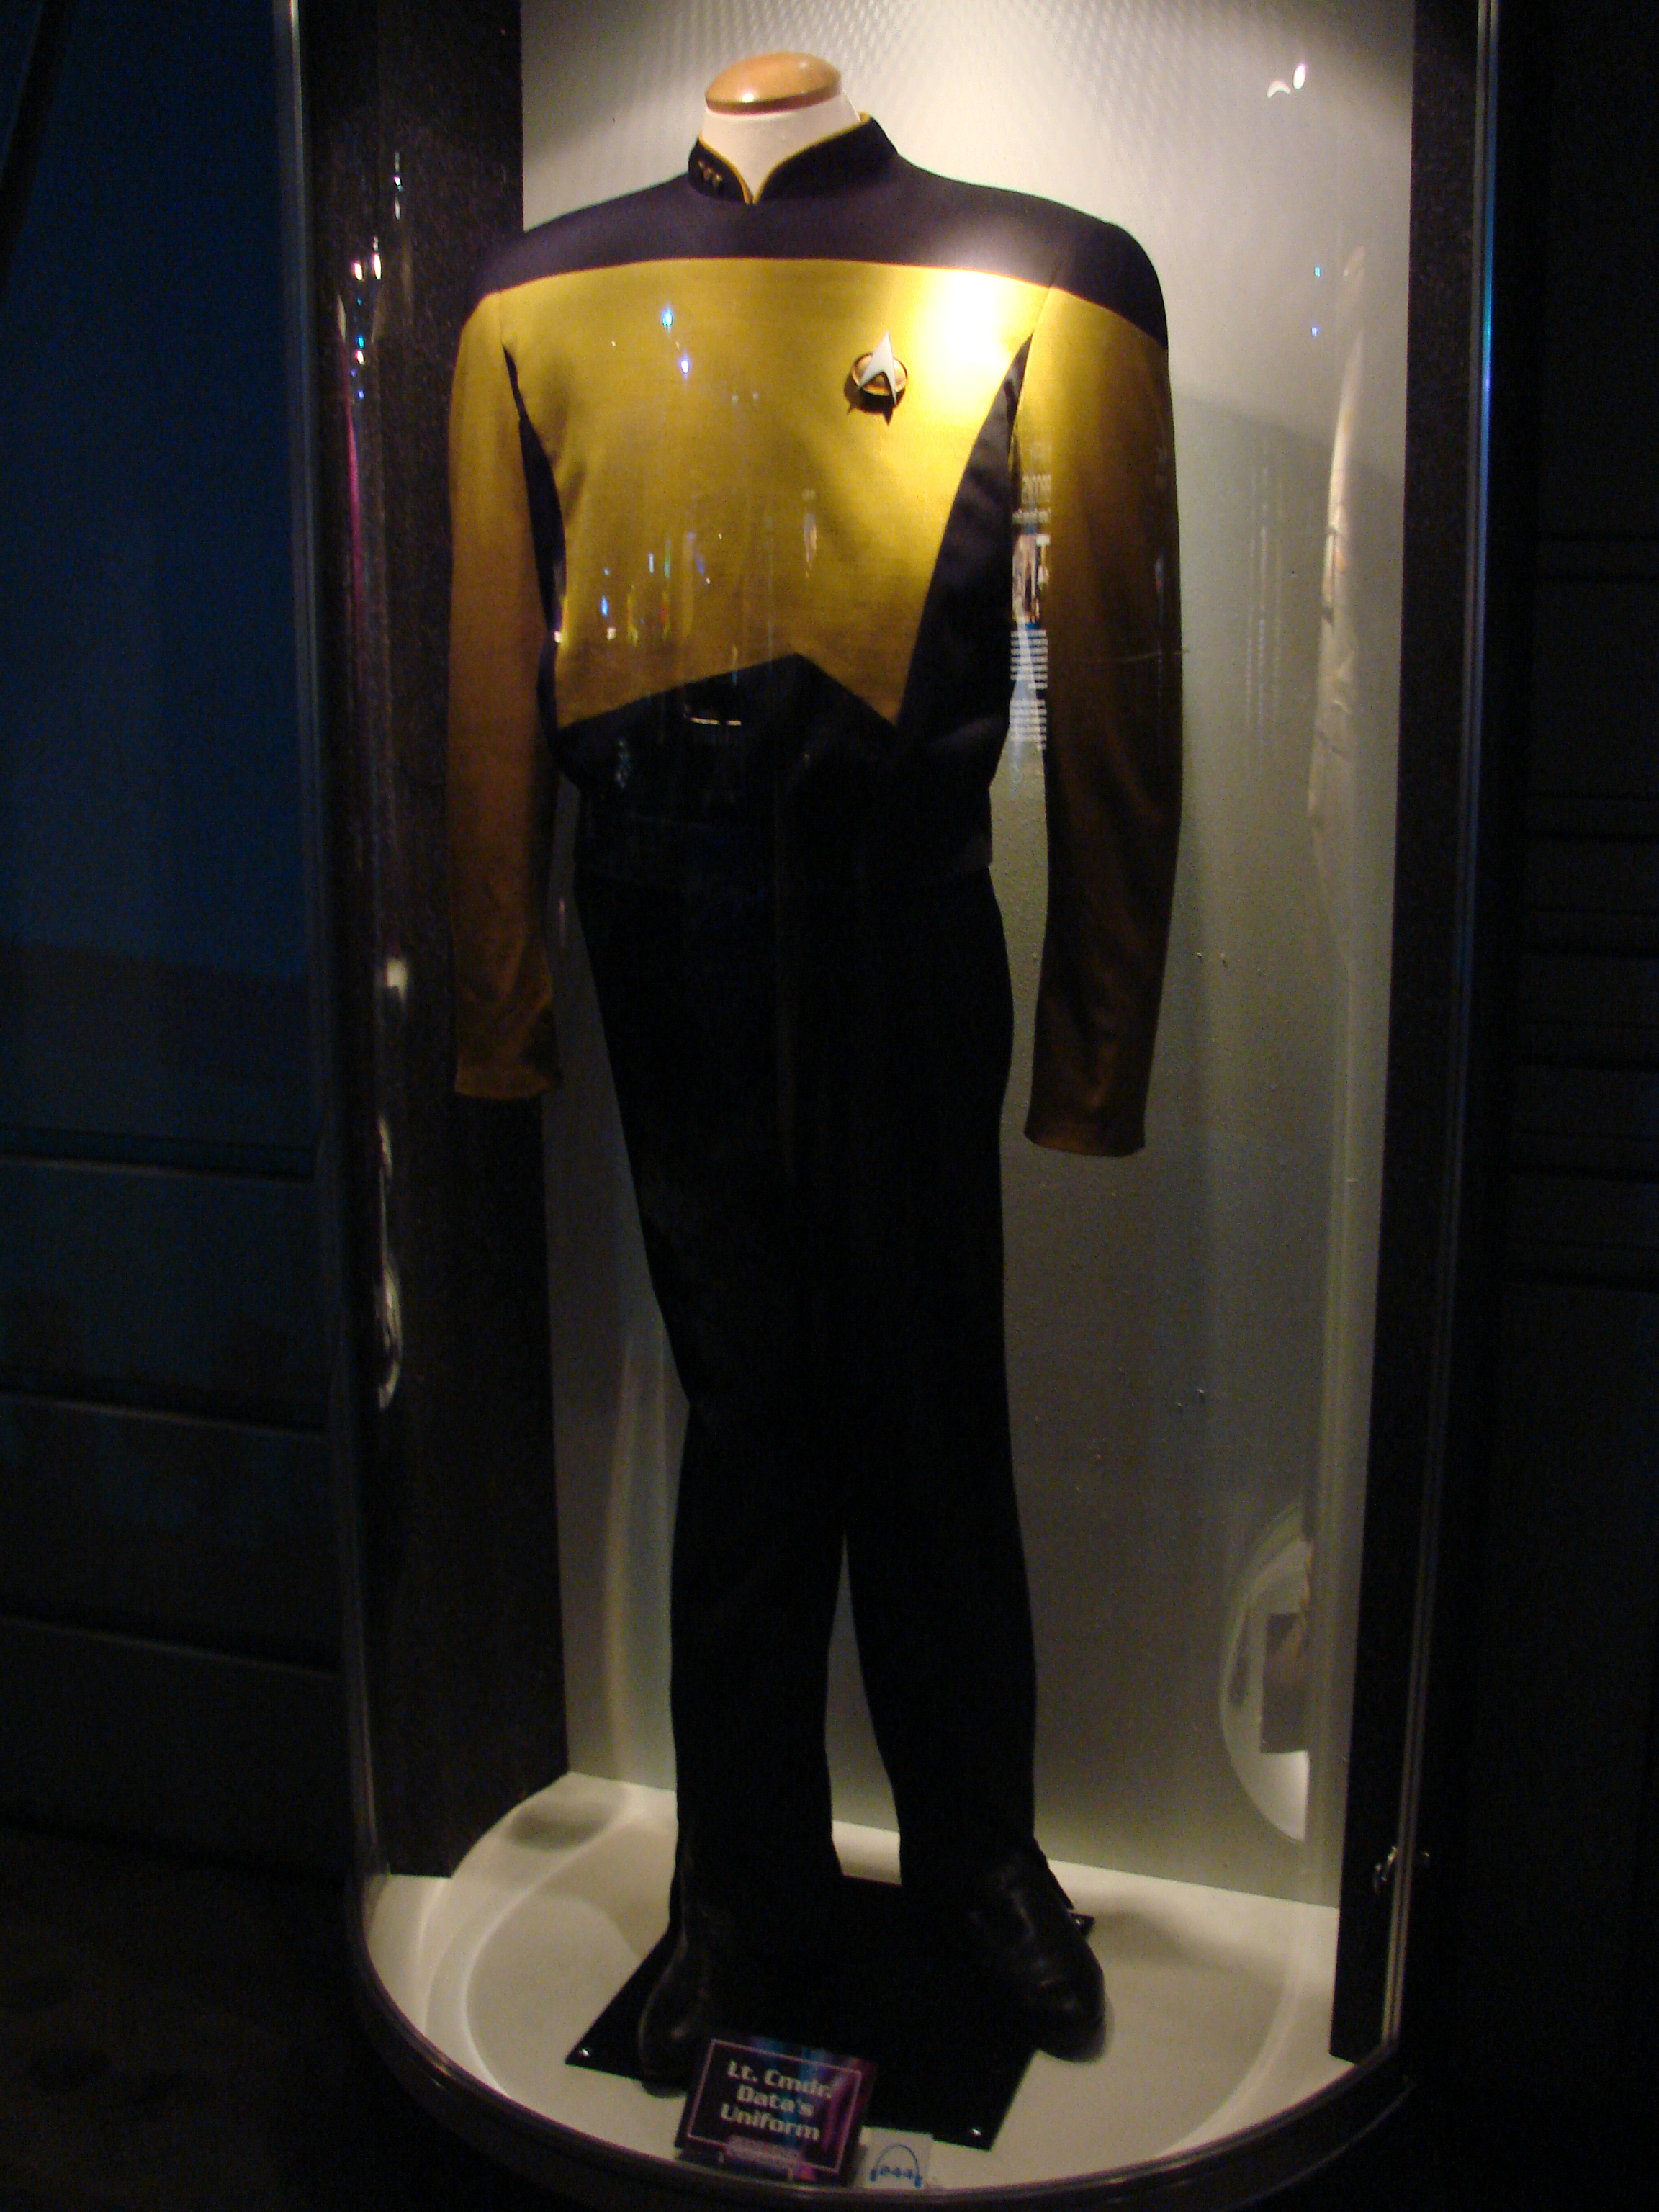 Lt. Cmdr. Data's Uniform